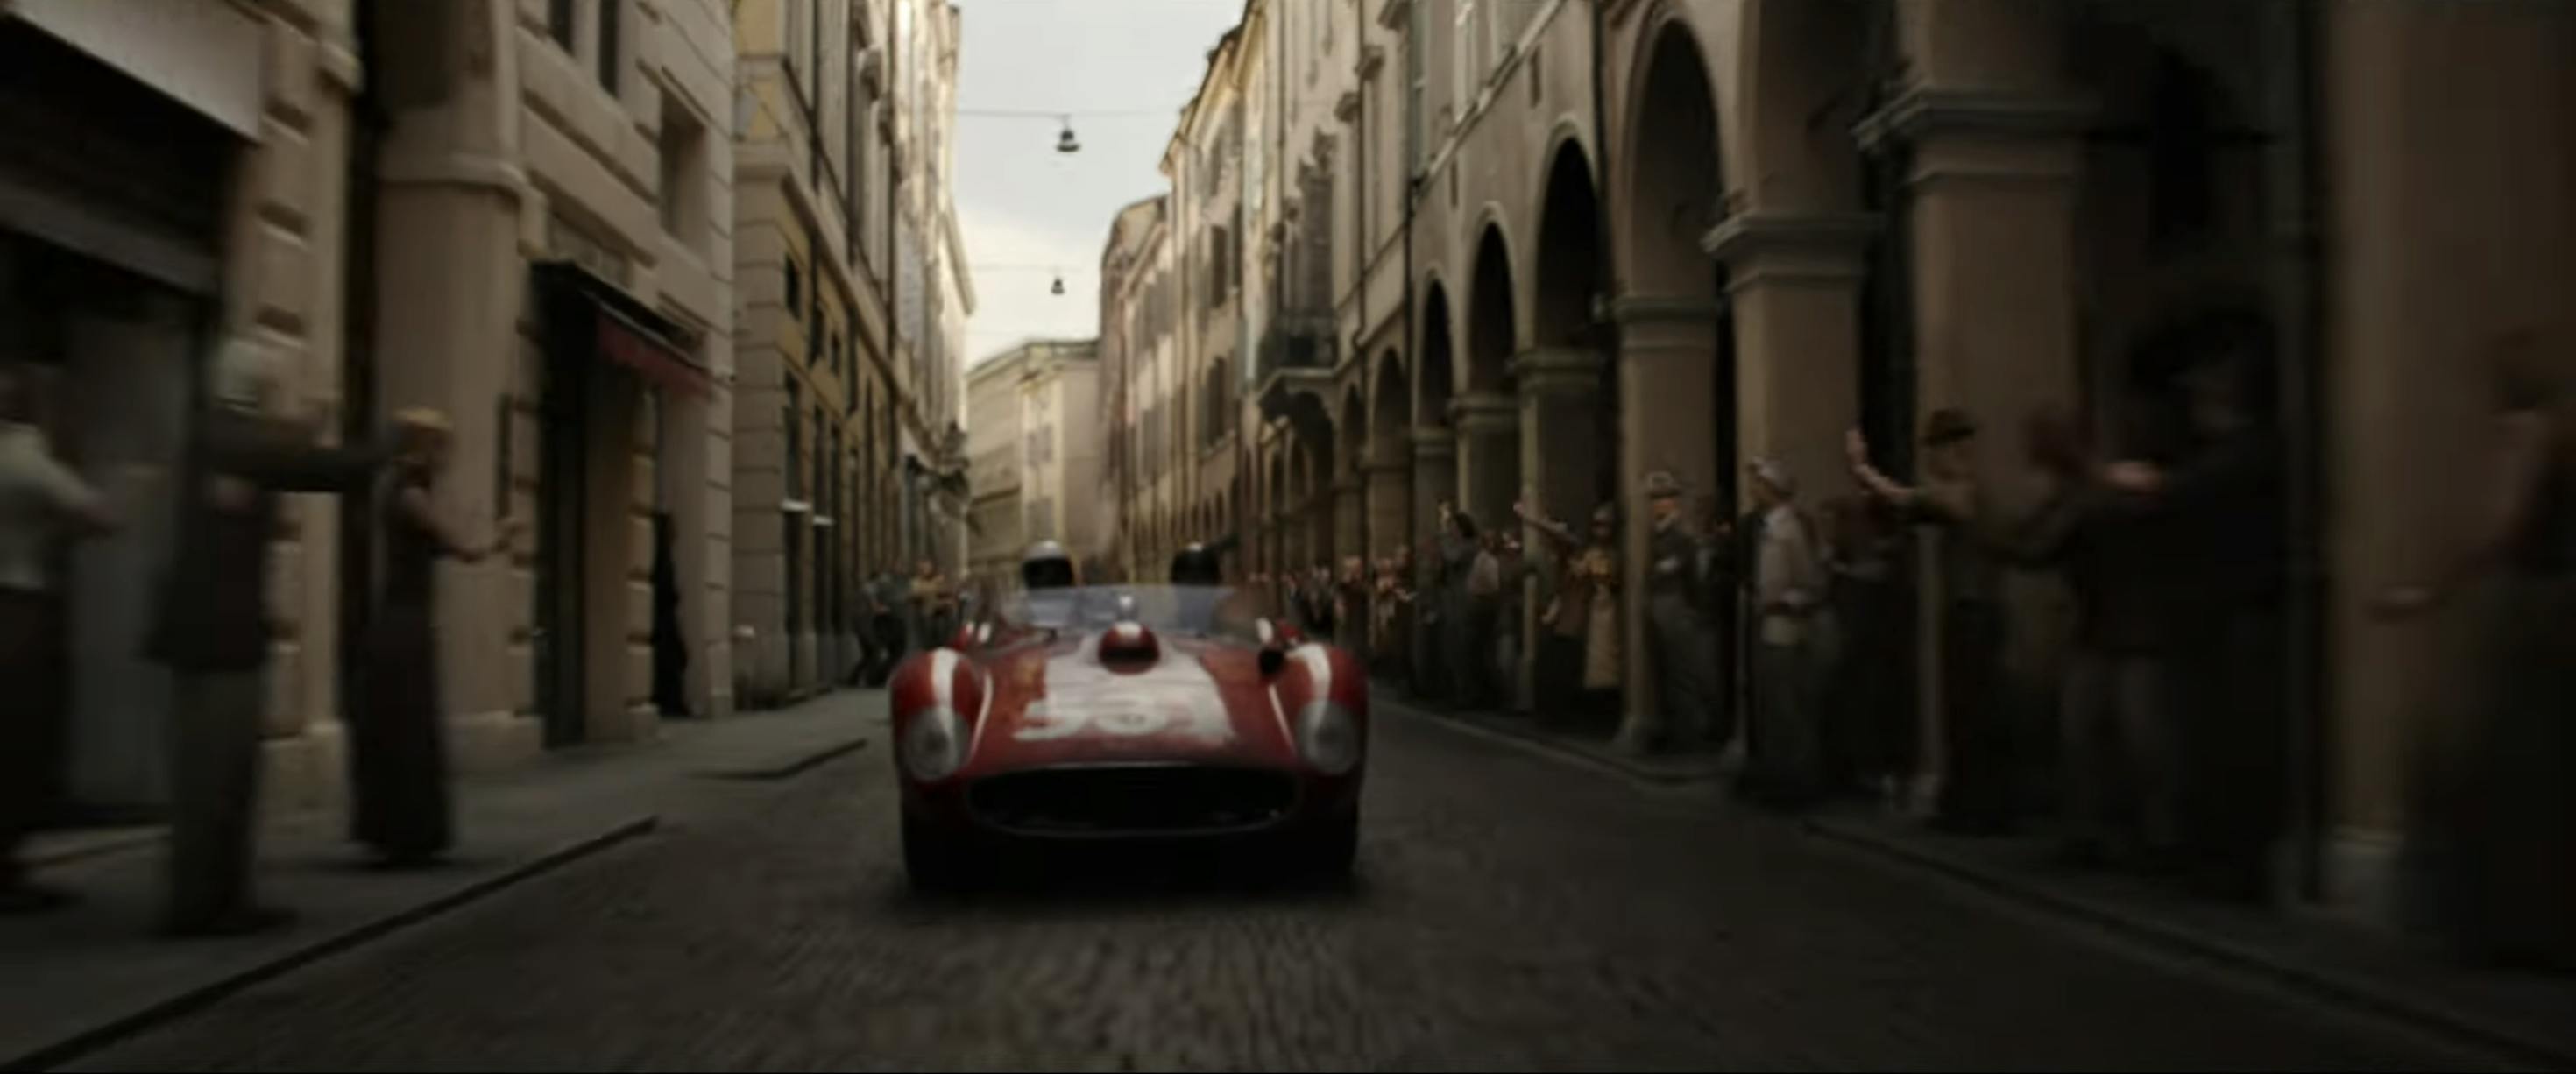 Ferrari film racing action still